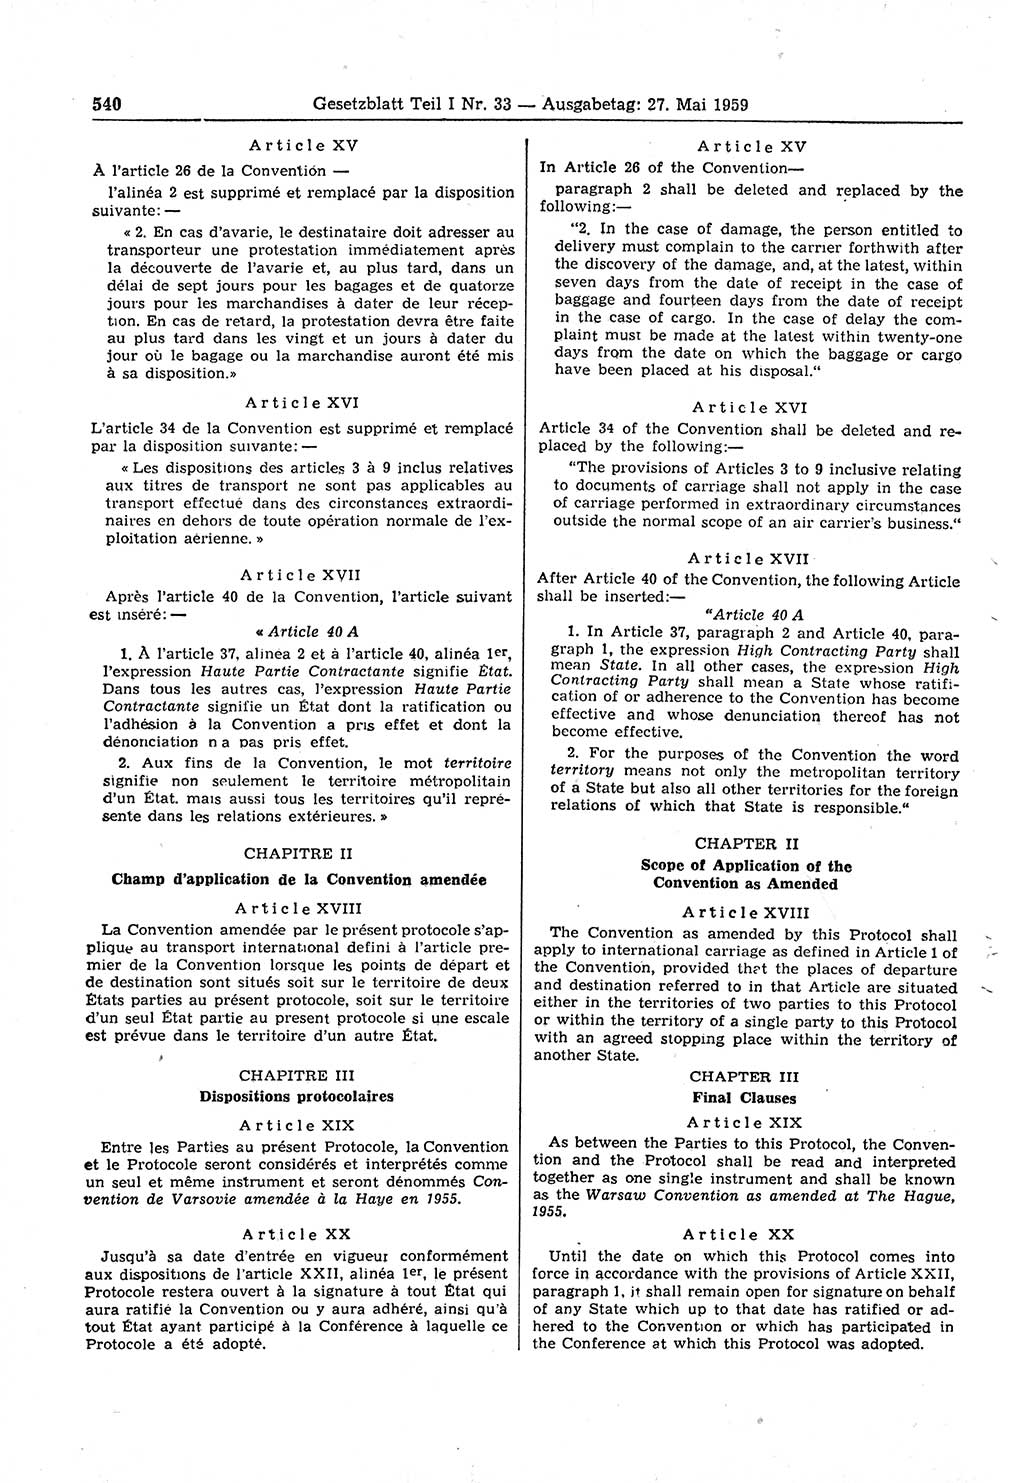 Gesetzblatt (GBl.) der Deutschen Demokratischen Republik (DDR) Teil Ⅰ 1959, Seite 540 (GBl. DDR Ⅰ 1959, S. 540)